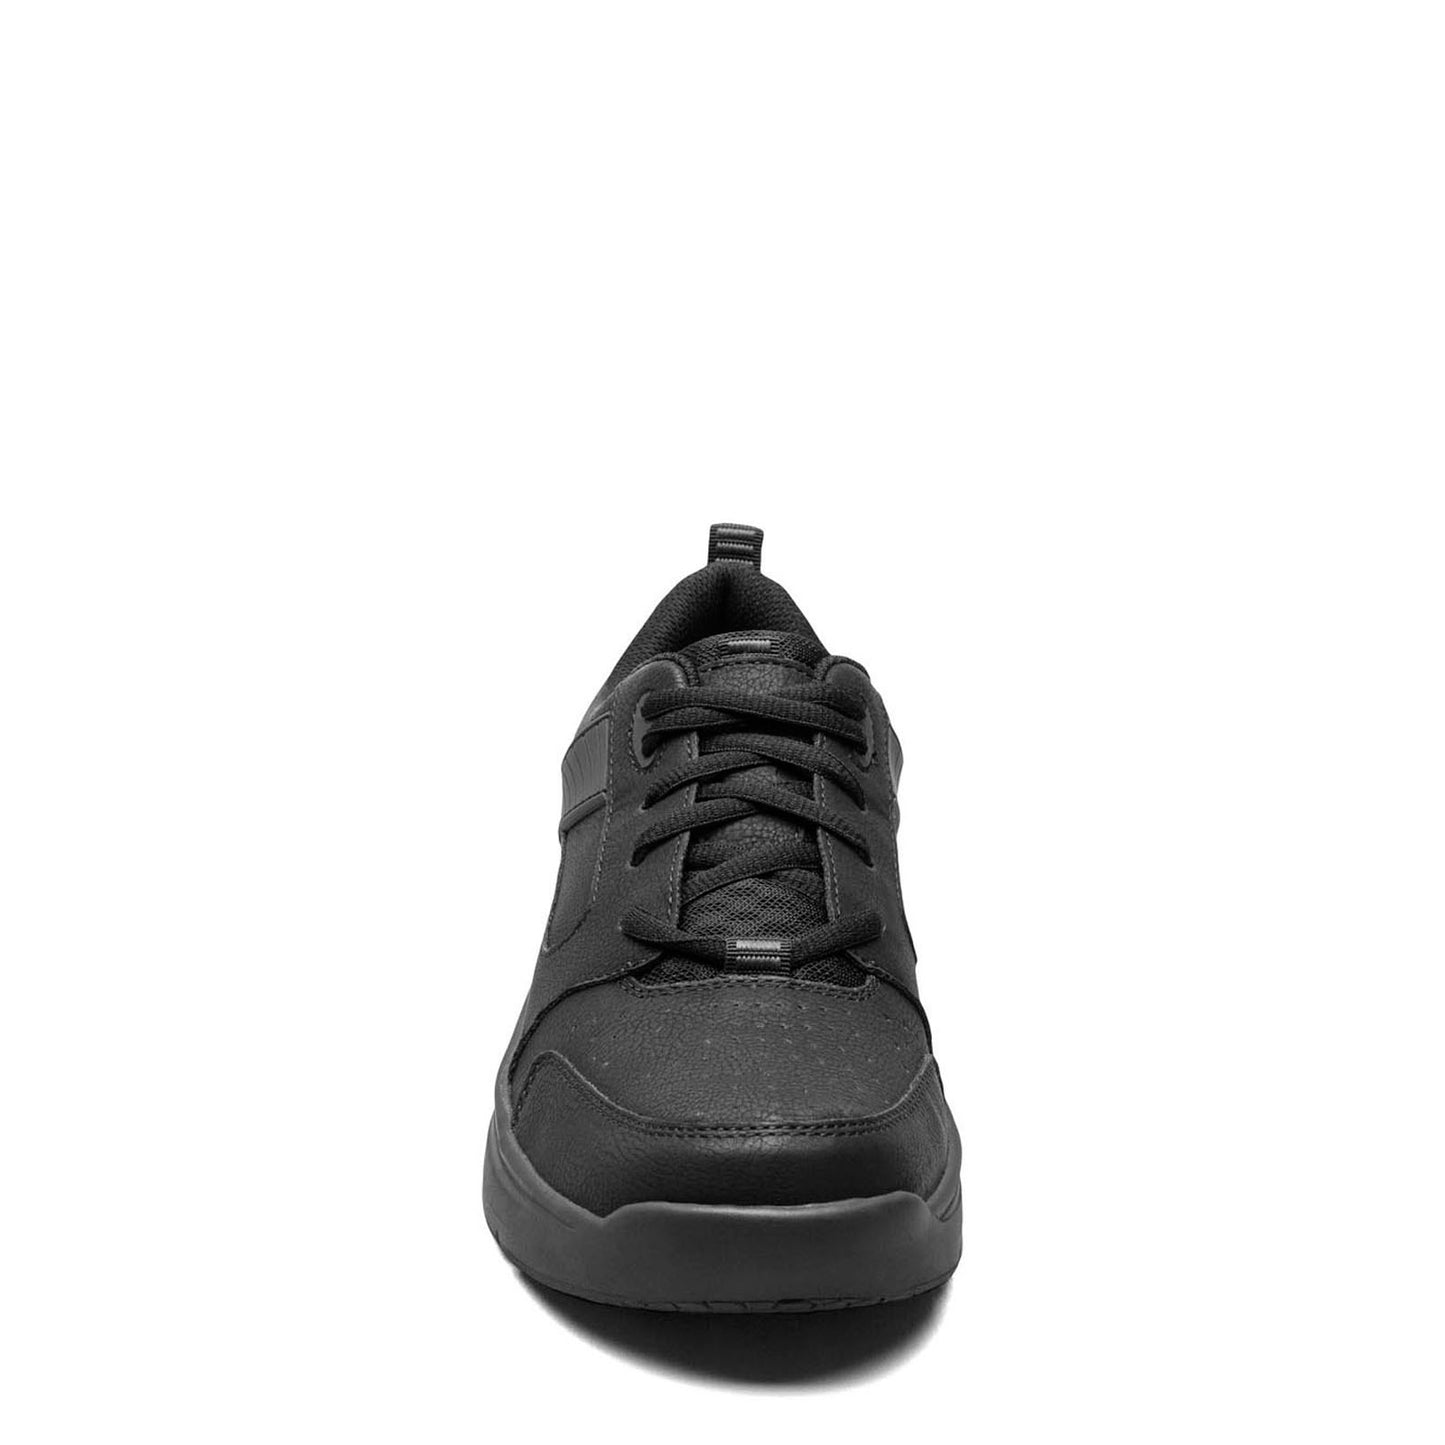 Peltz Shoes  Men's Nunn Bush KORE Elevate Moc Toe Oxford BLACK 85017-001